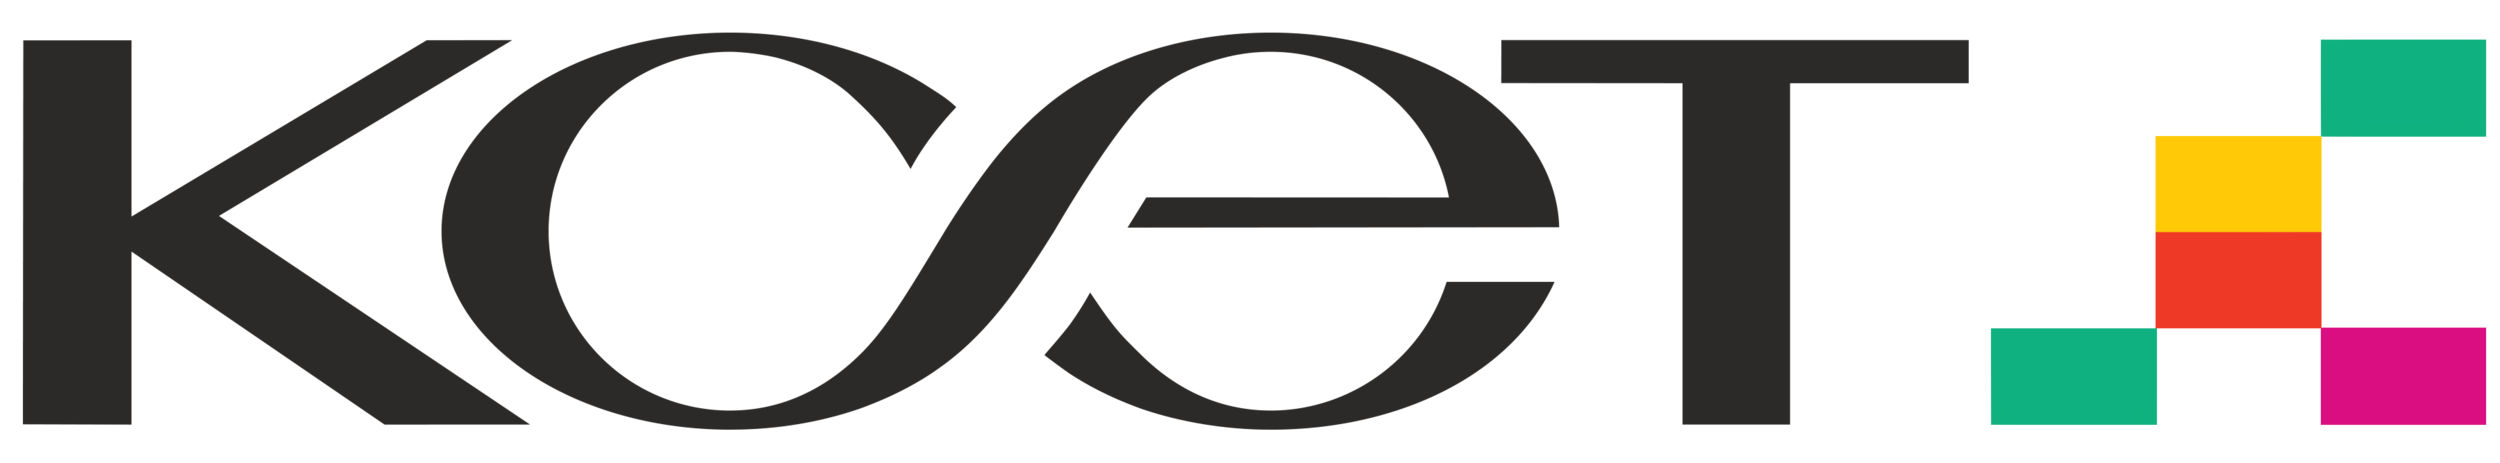 KCET_Logo.png